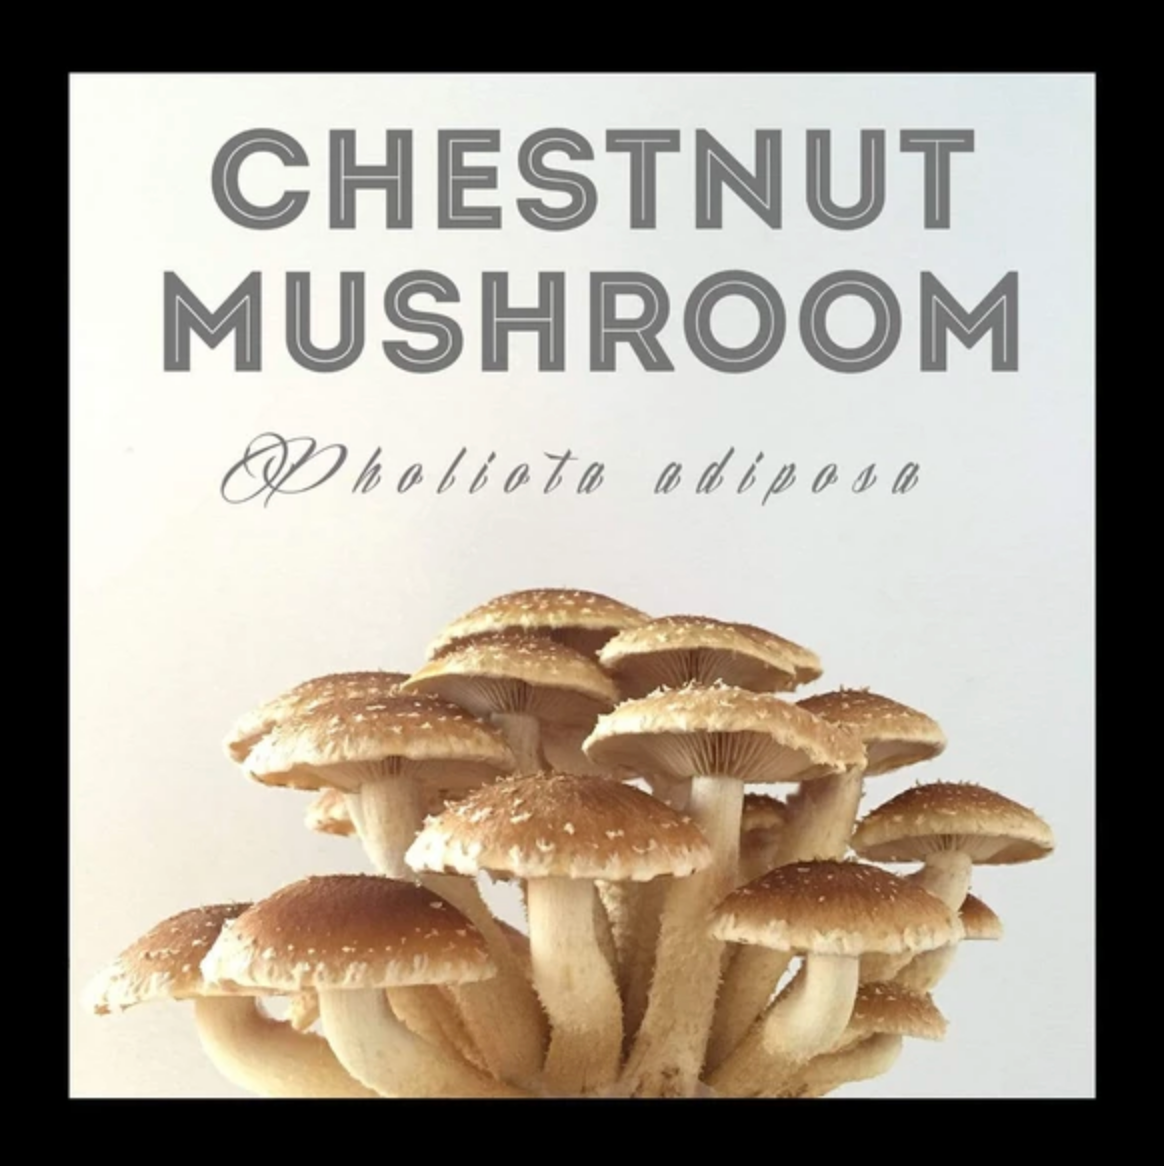 Chestnut Mushroom Sawdust Spawn